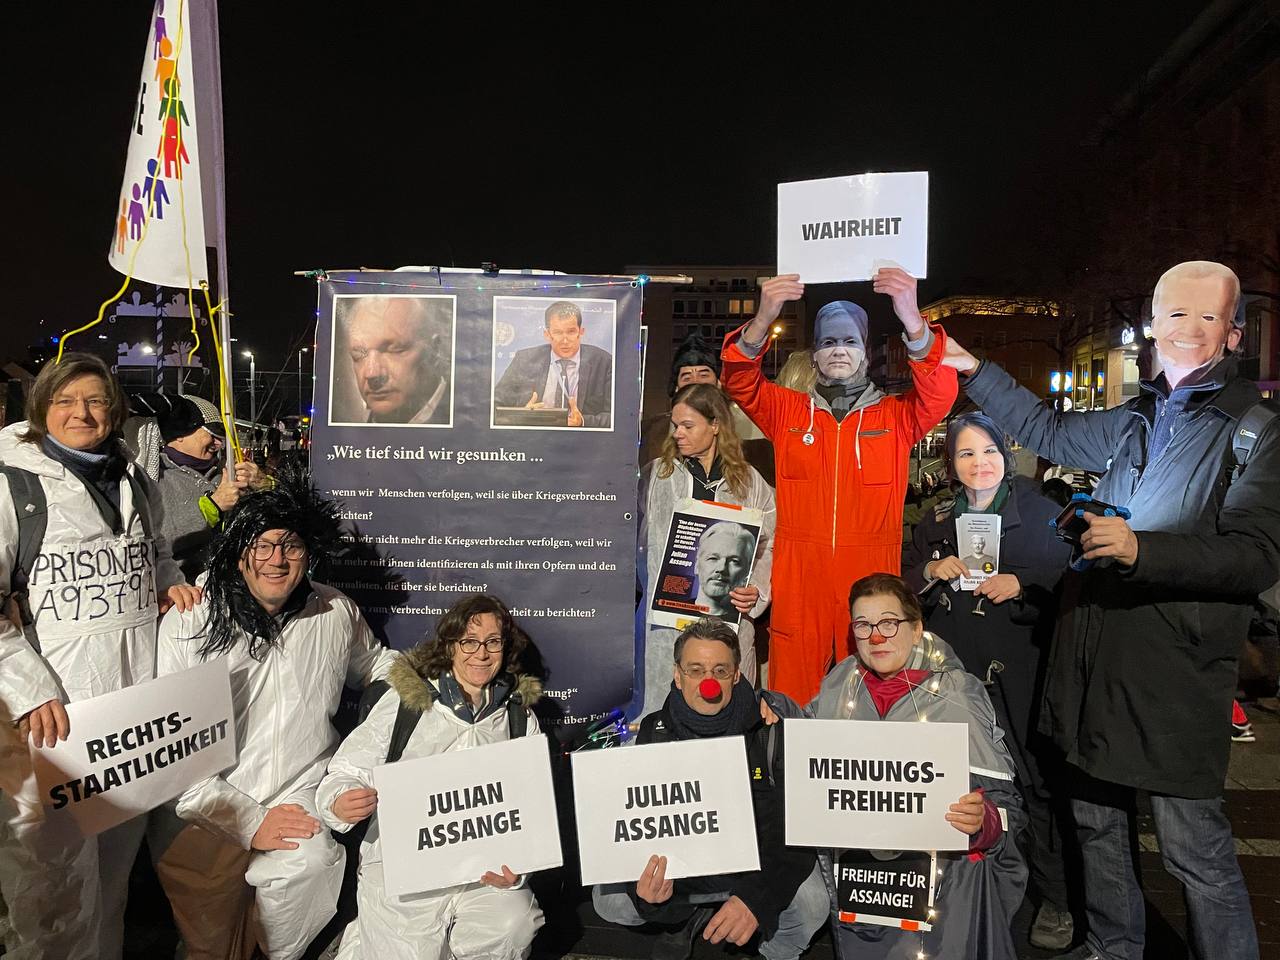 Tag der politischen Gefangenen: Bundesregierung soll sich für Freilassung von Julian Assange einsetzen